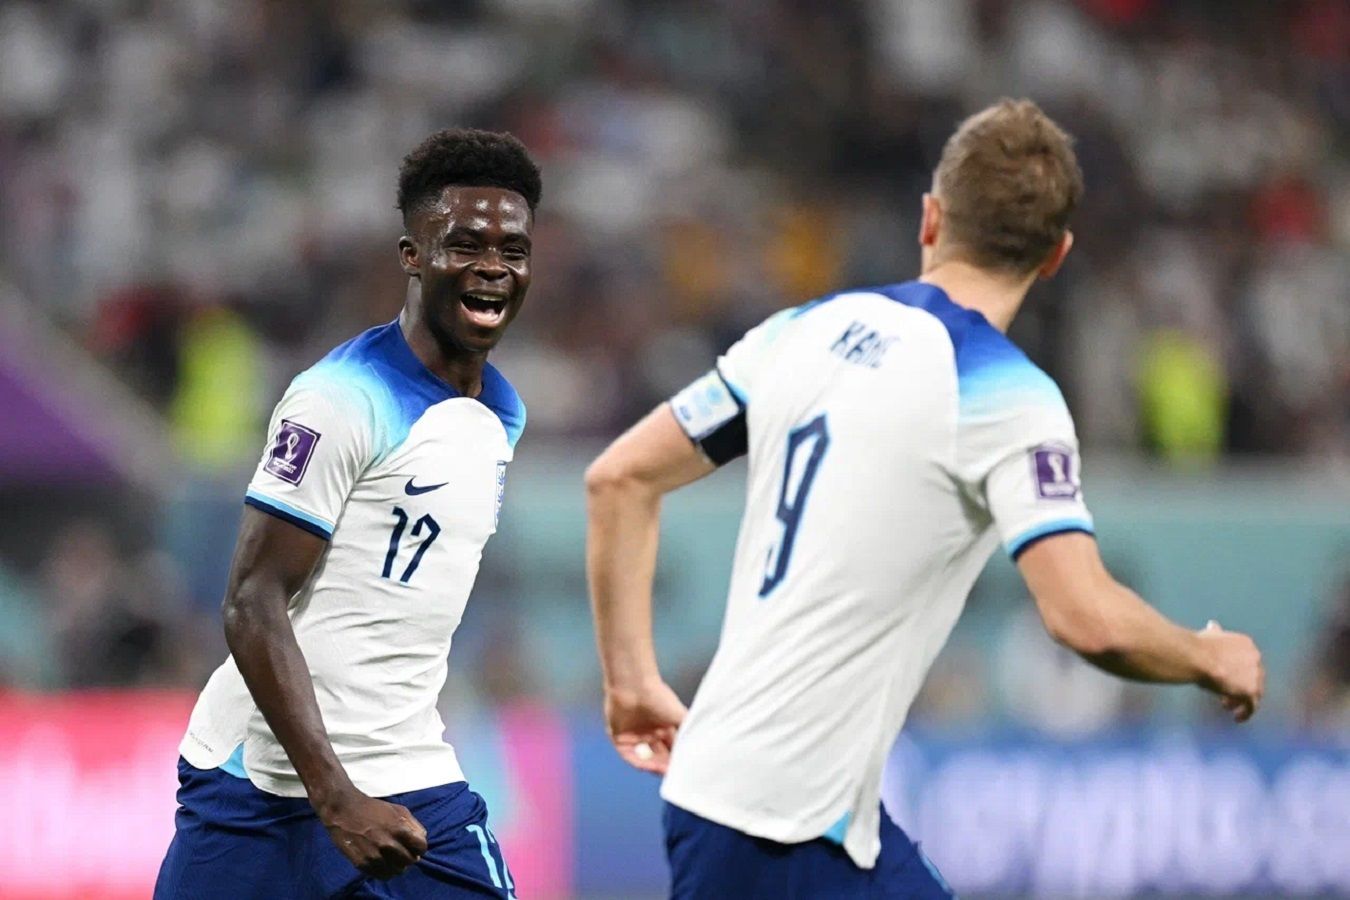 Англия — Словакия: во сколько начало матча 1/8 финала Евро-2024, где смотреть трансляцию